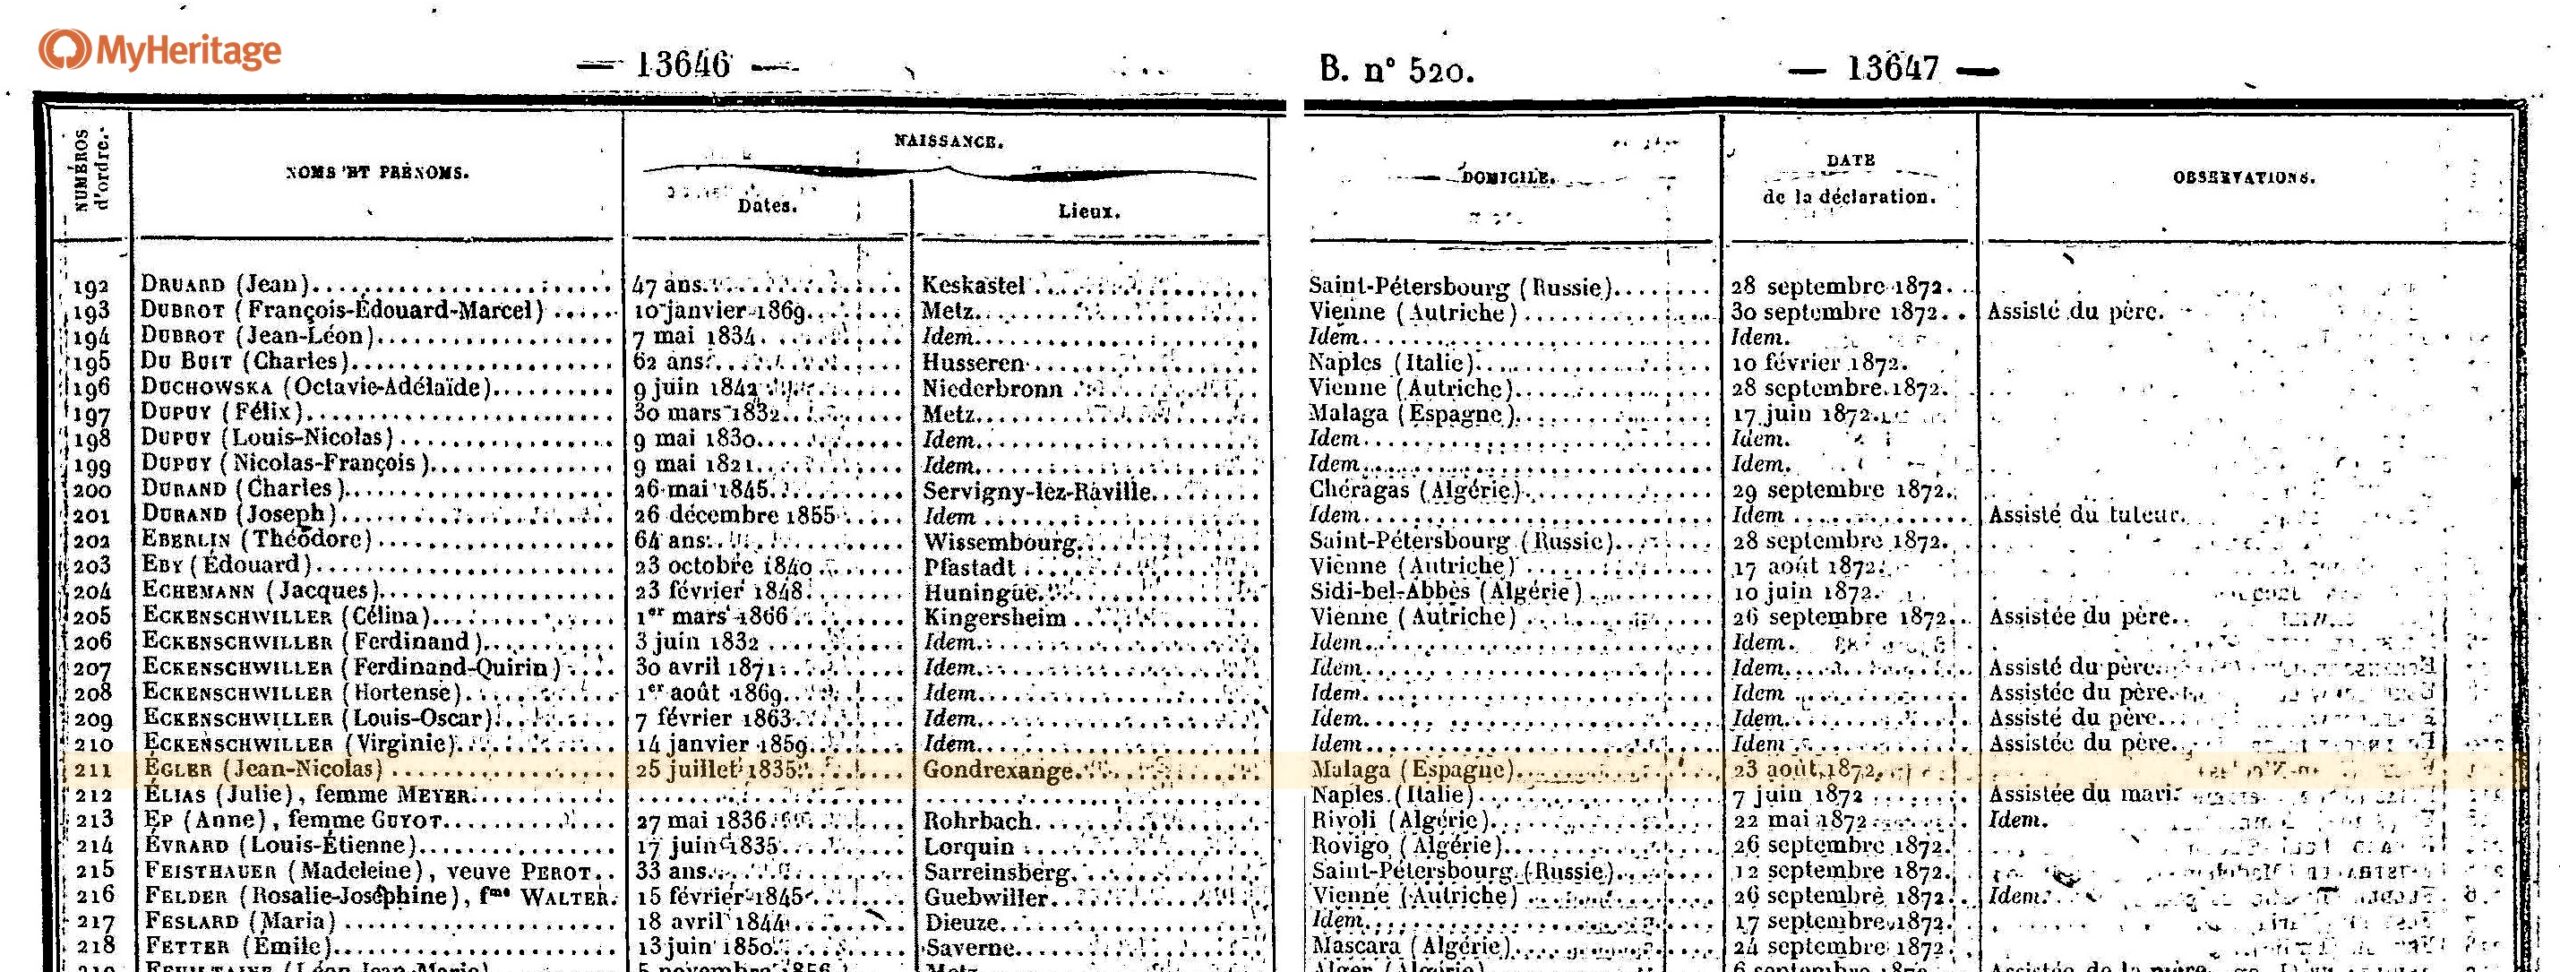 La opción de nacionalidad para Jean Nicolas EGLER en 1872 (Créditos: Filae MyHeritage) Haga clic para ampliar